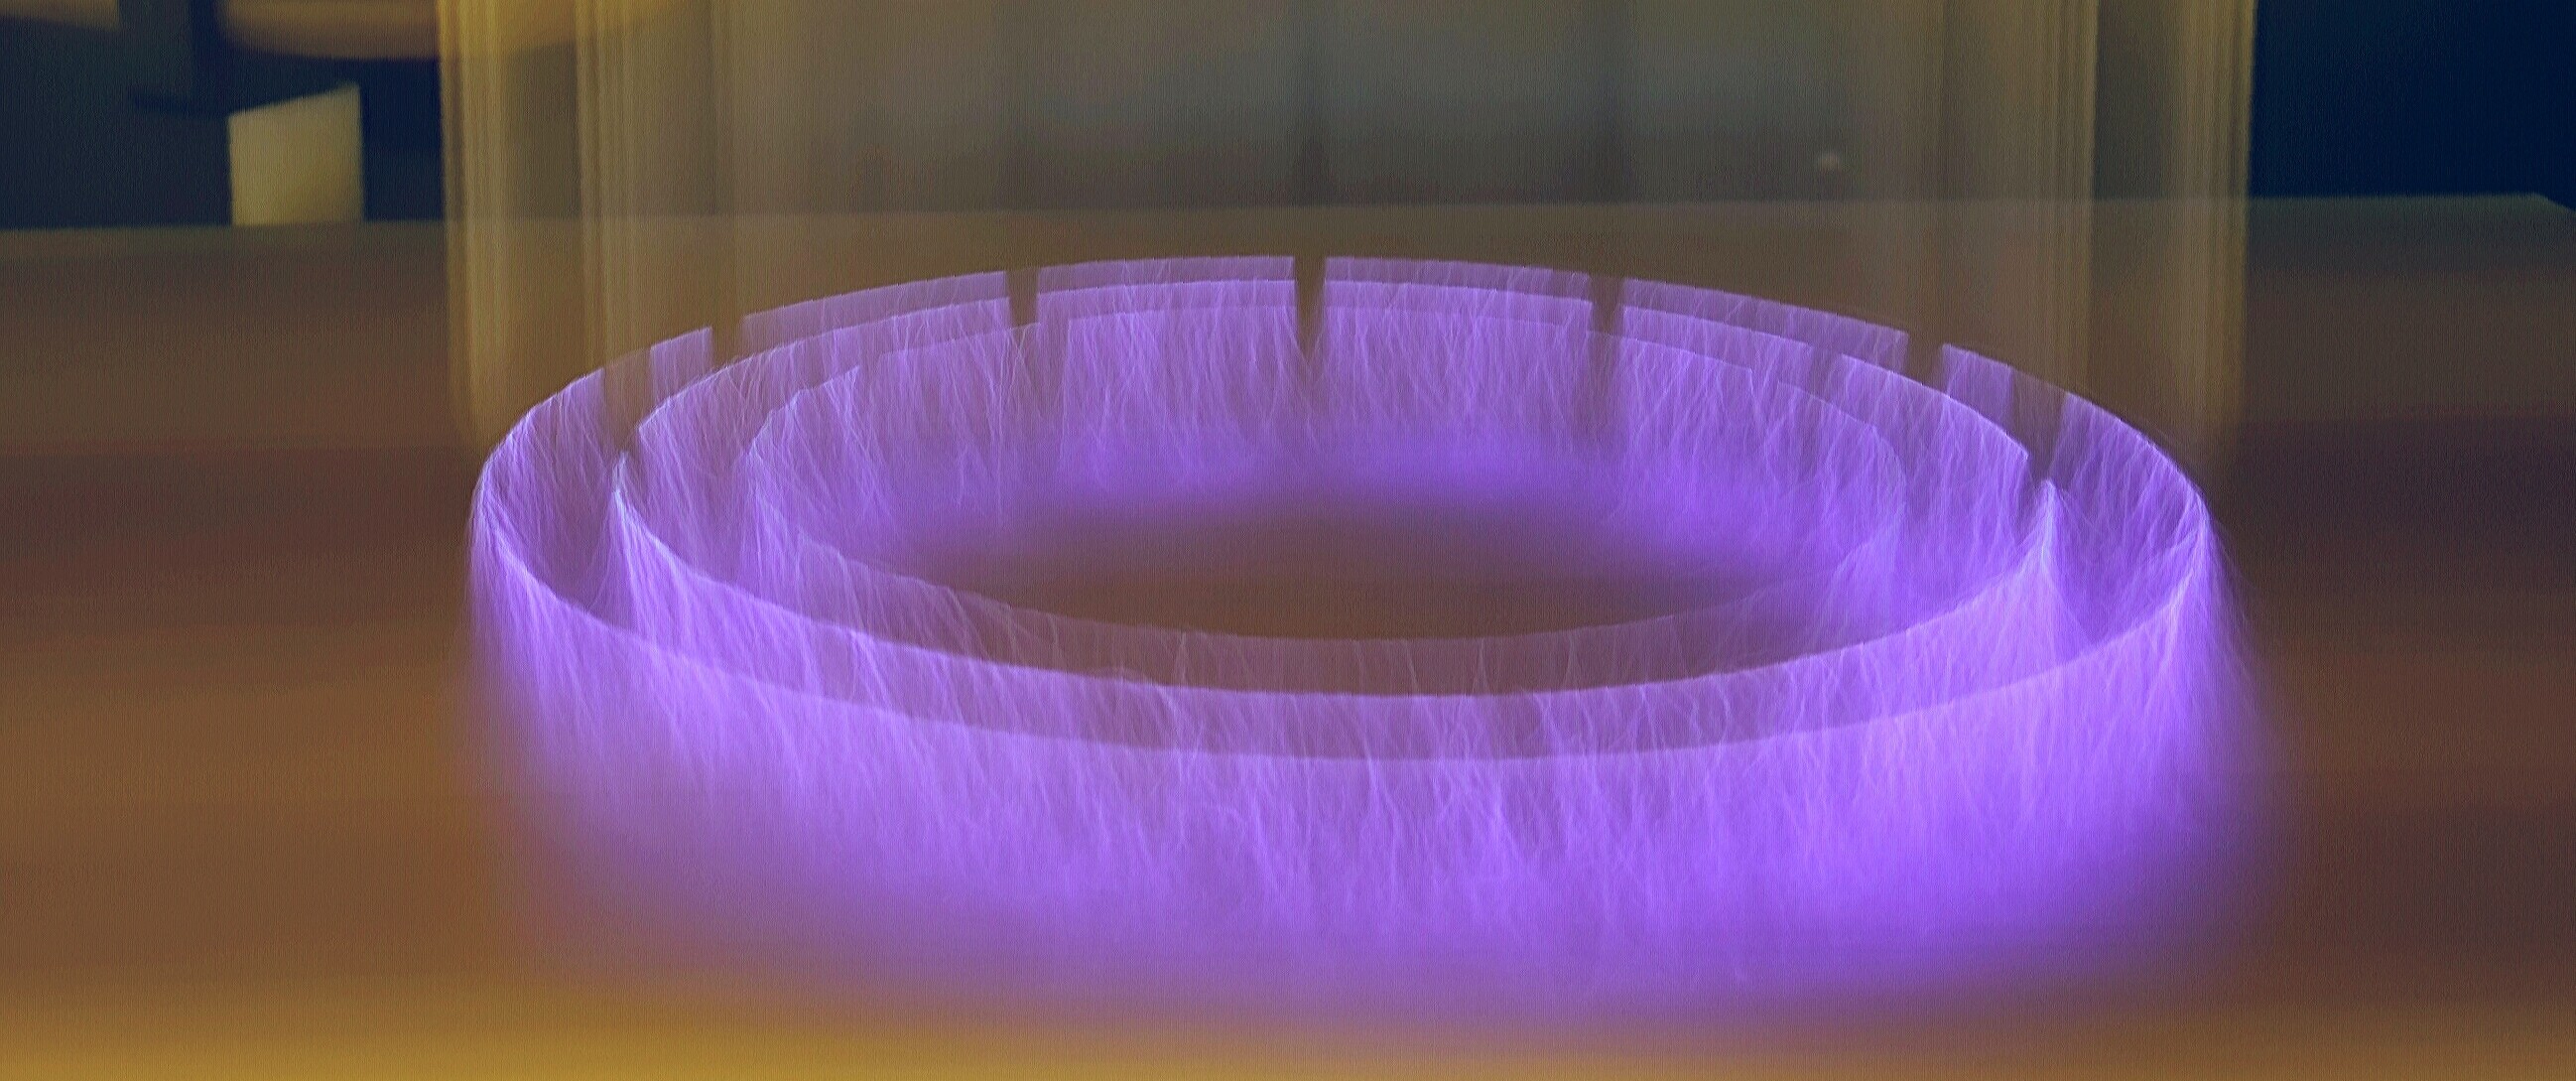 Photo of 3DT plasma